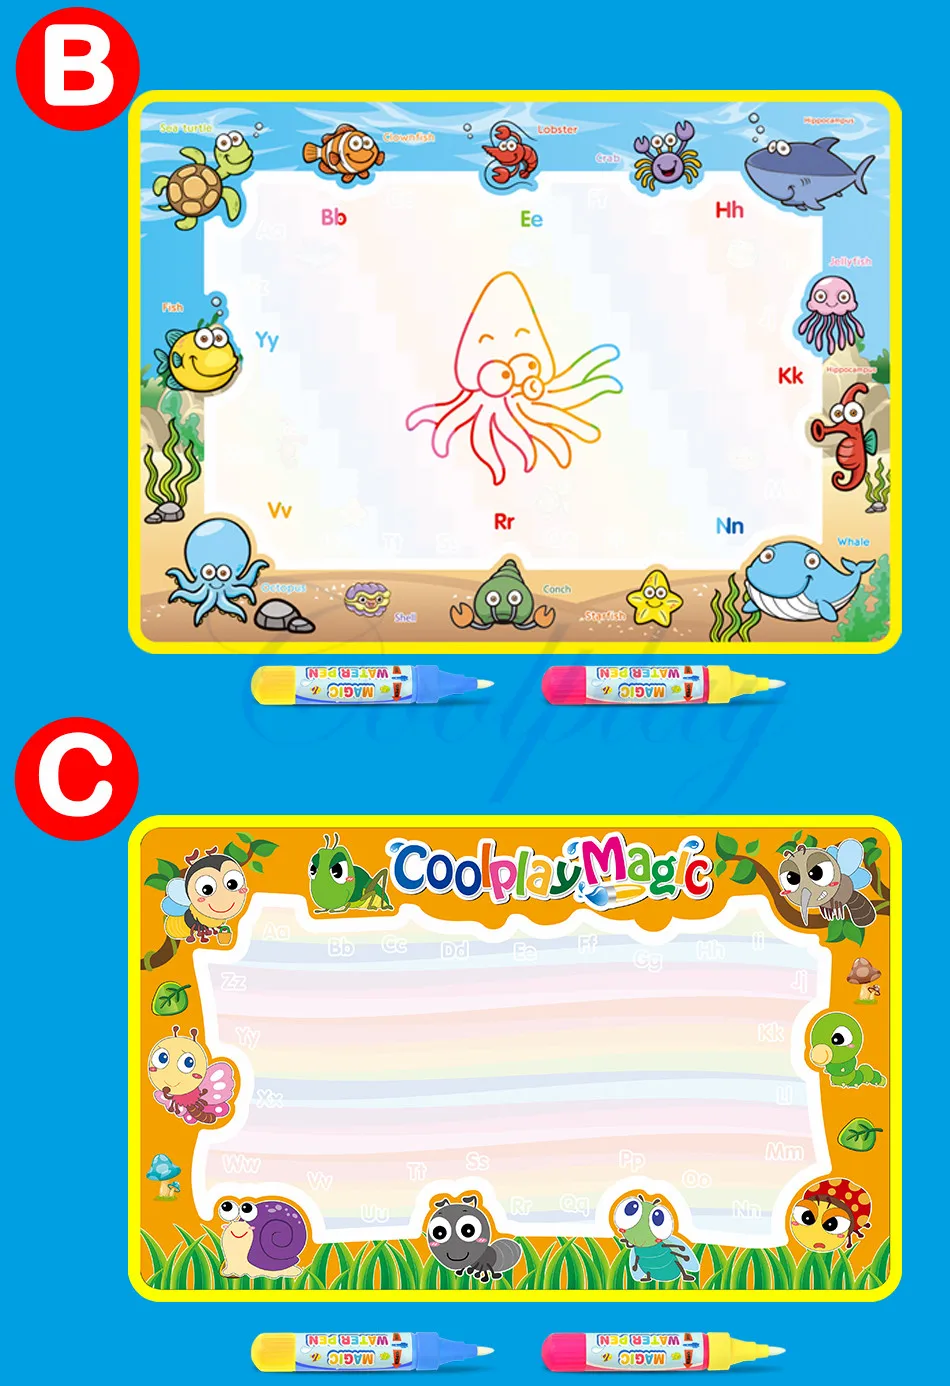 Coolplay 59x36 см Радужный коврик для рисования водой и 2 ручки водный коврик для рисования книги-раскраски коврик для рисования водой Рождественский подарок для детей